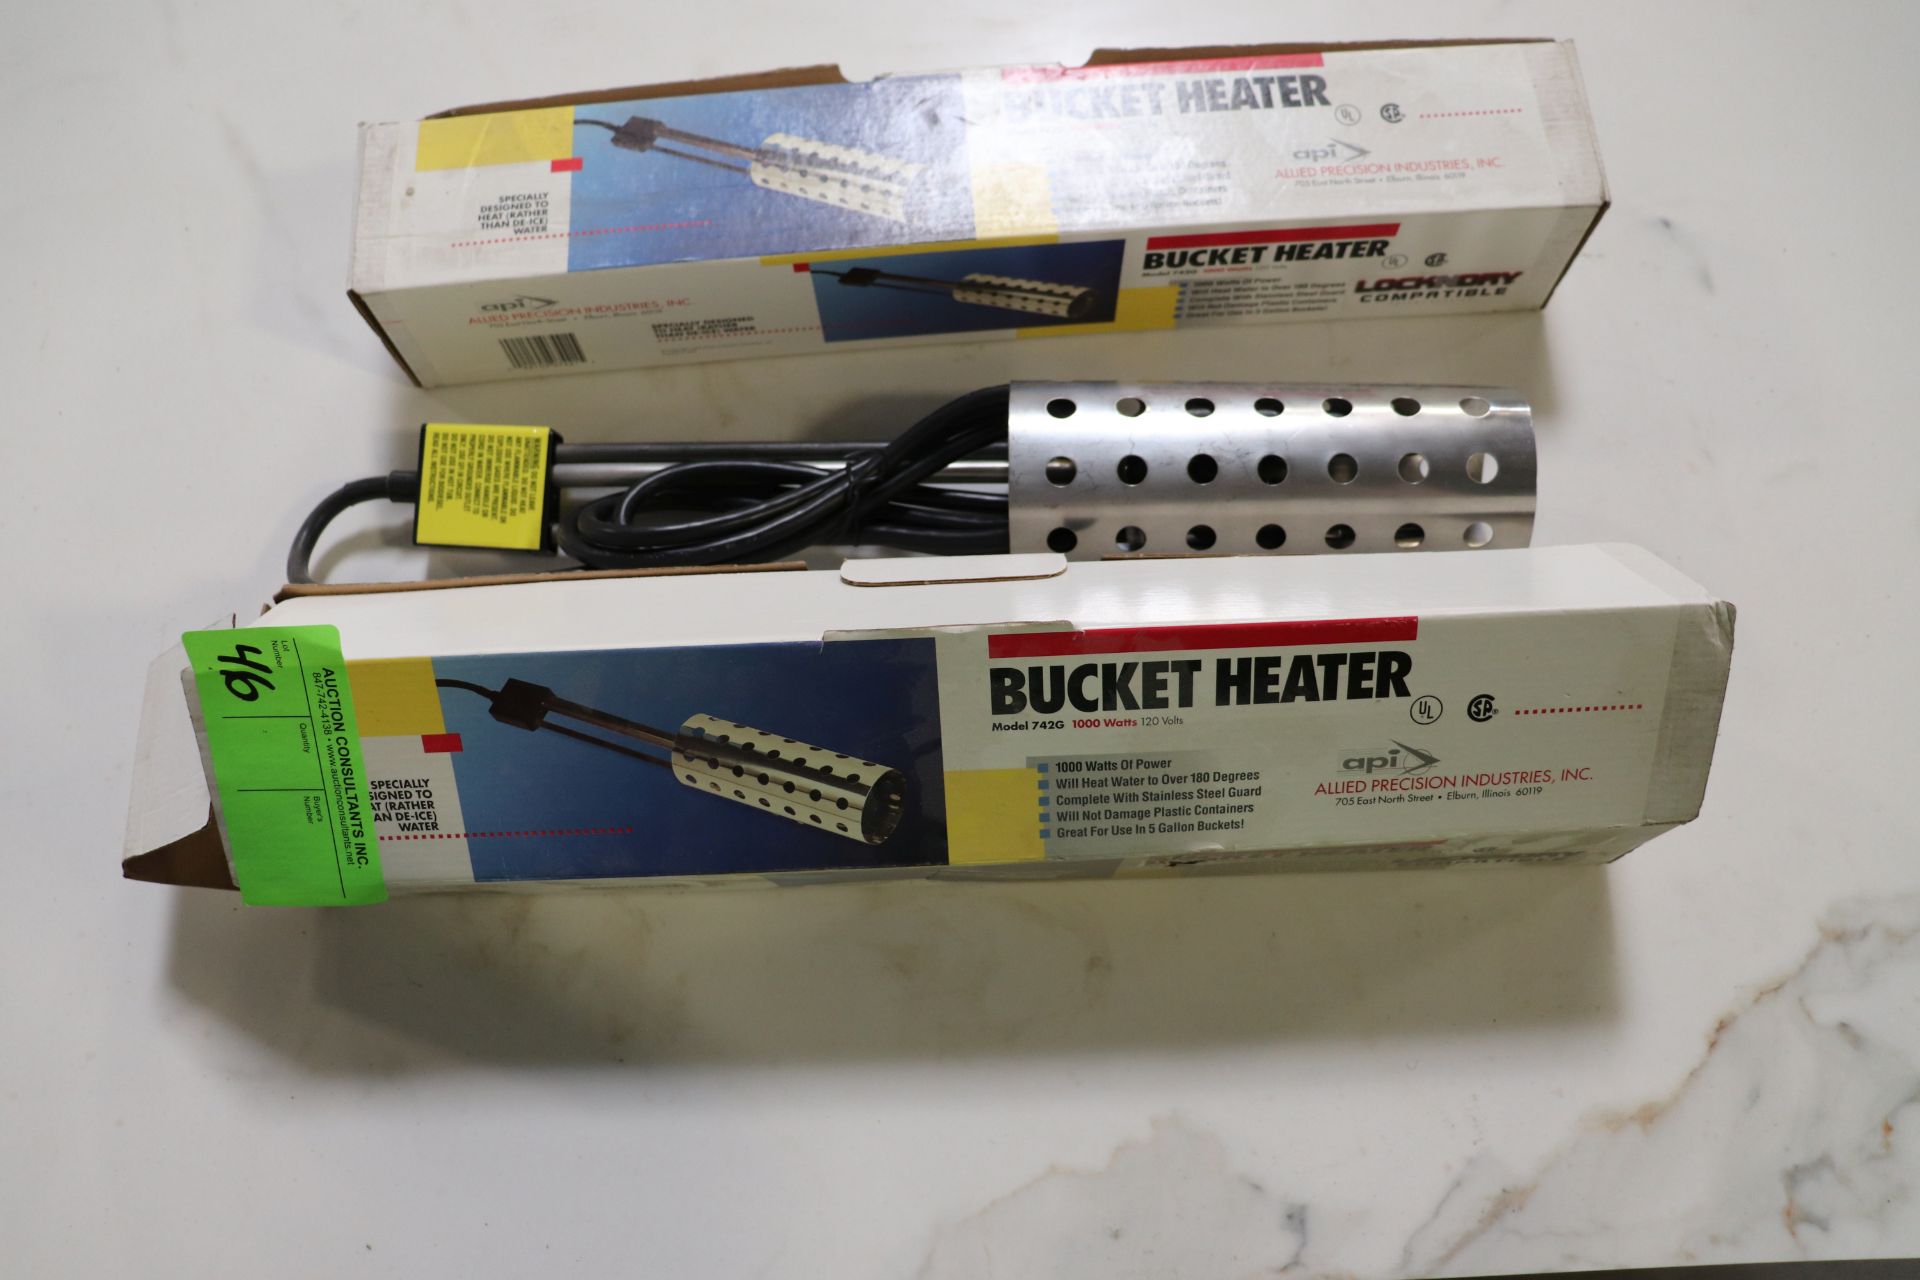 Two Lockndry compatible bucket heaters, model 742G, 1000-watt